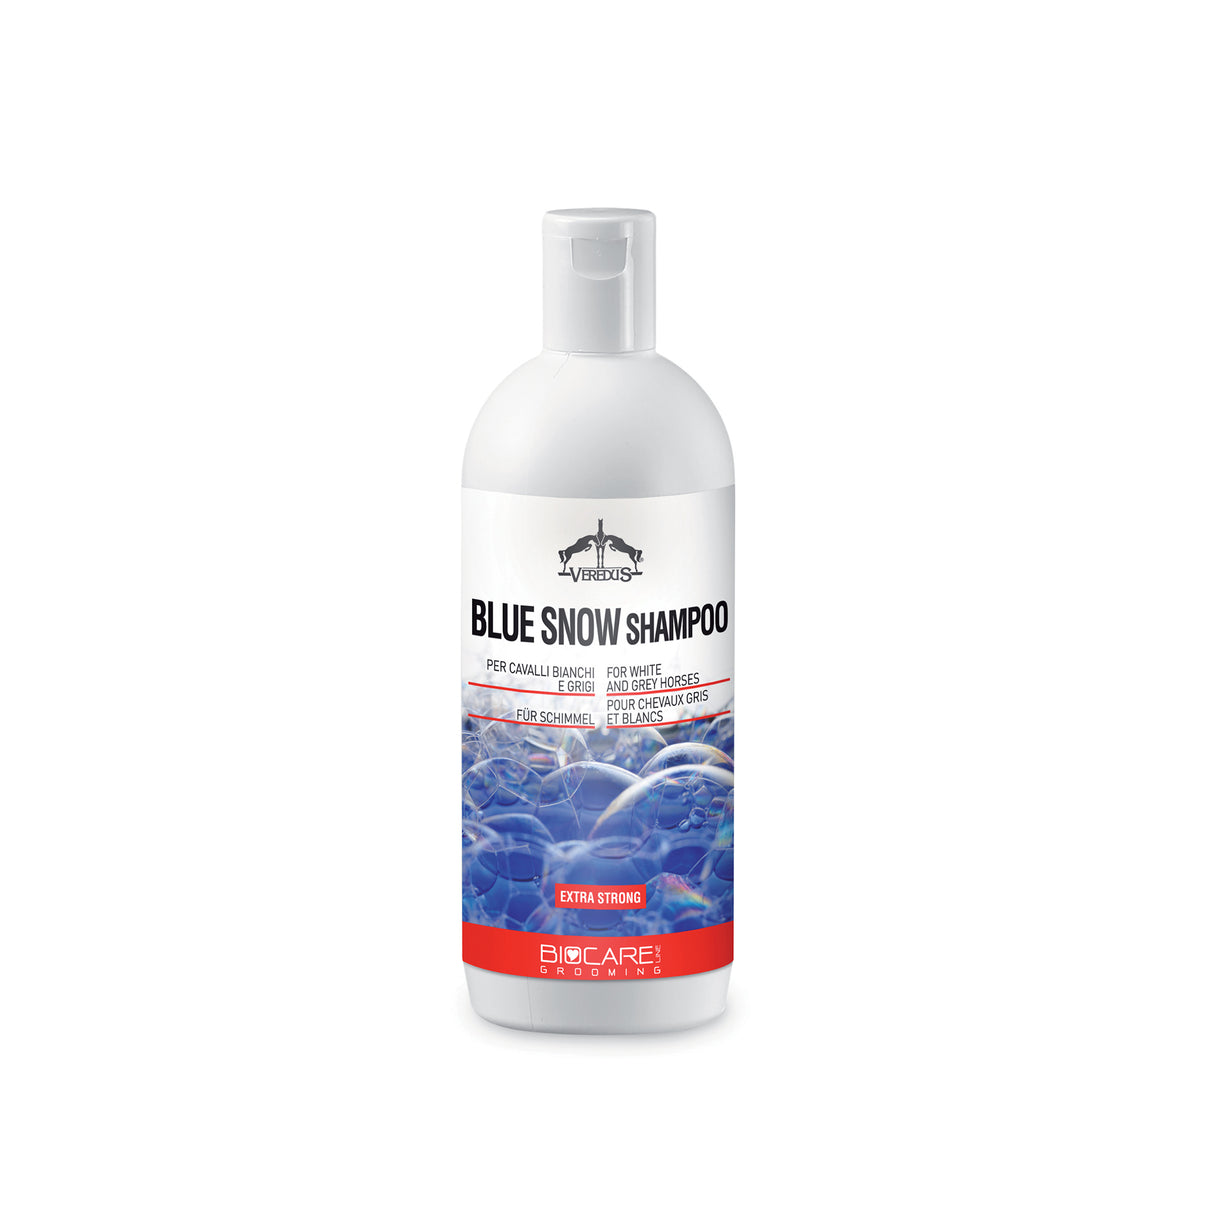 Veredus Blue Snow Shampoo